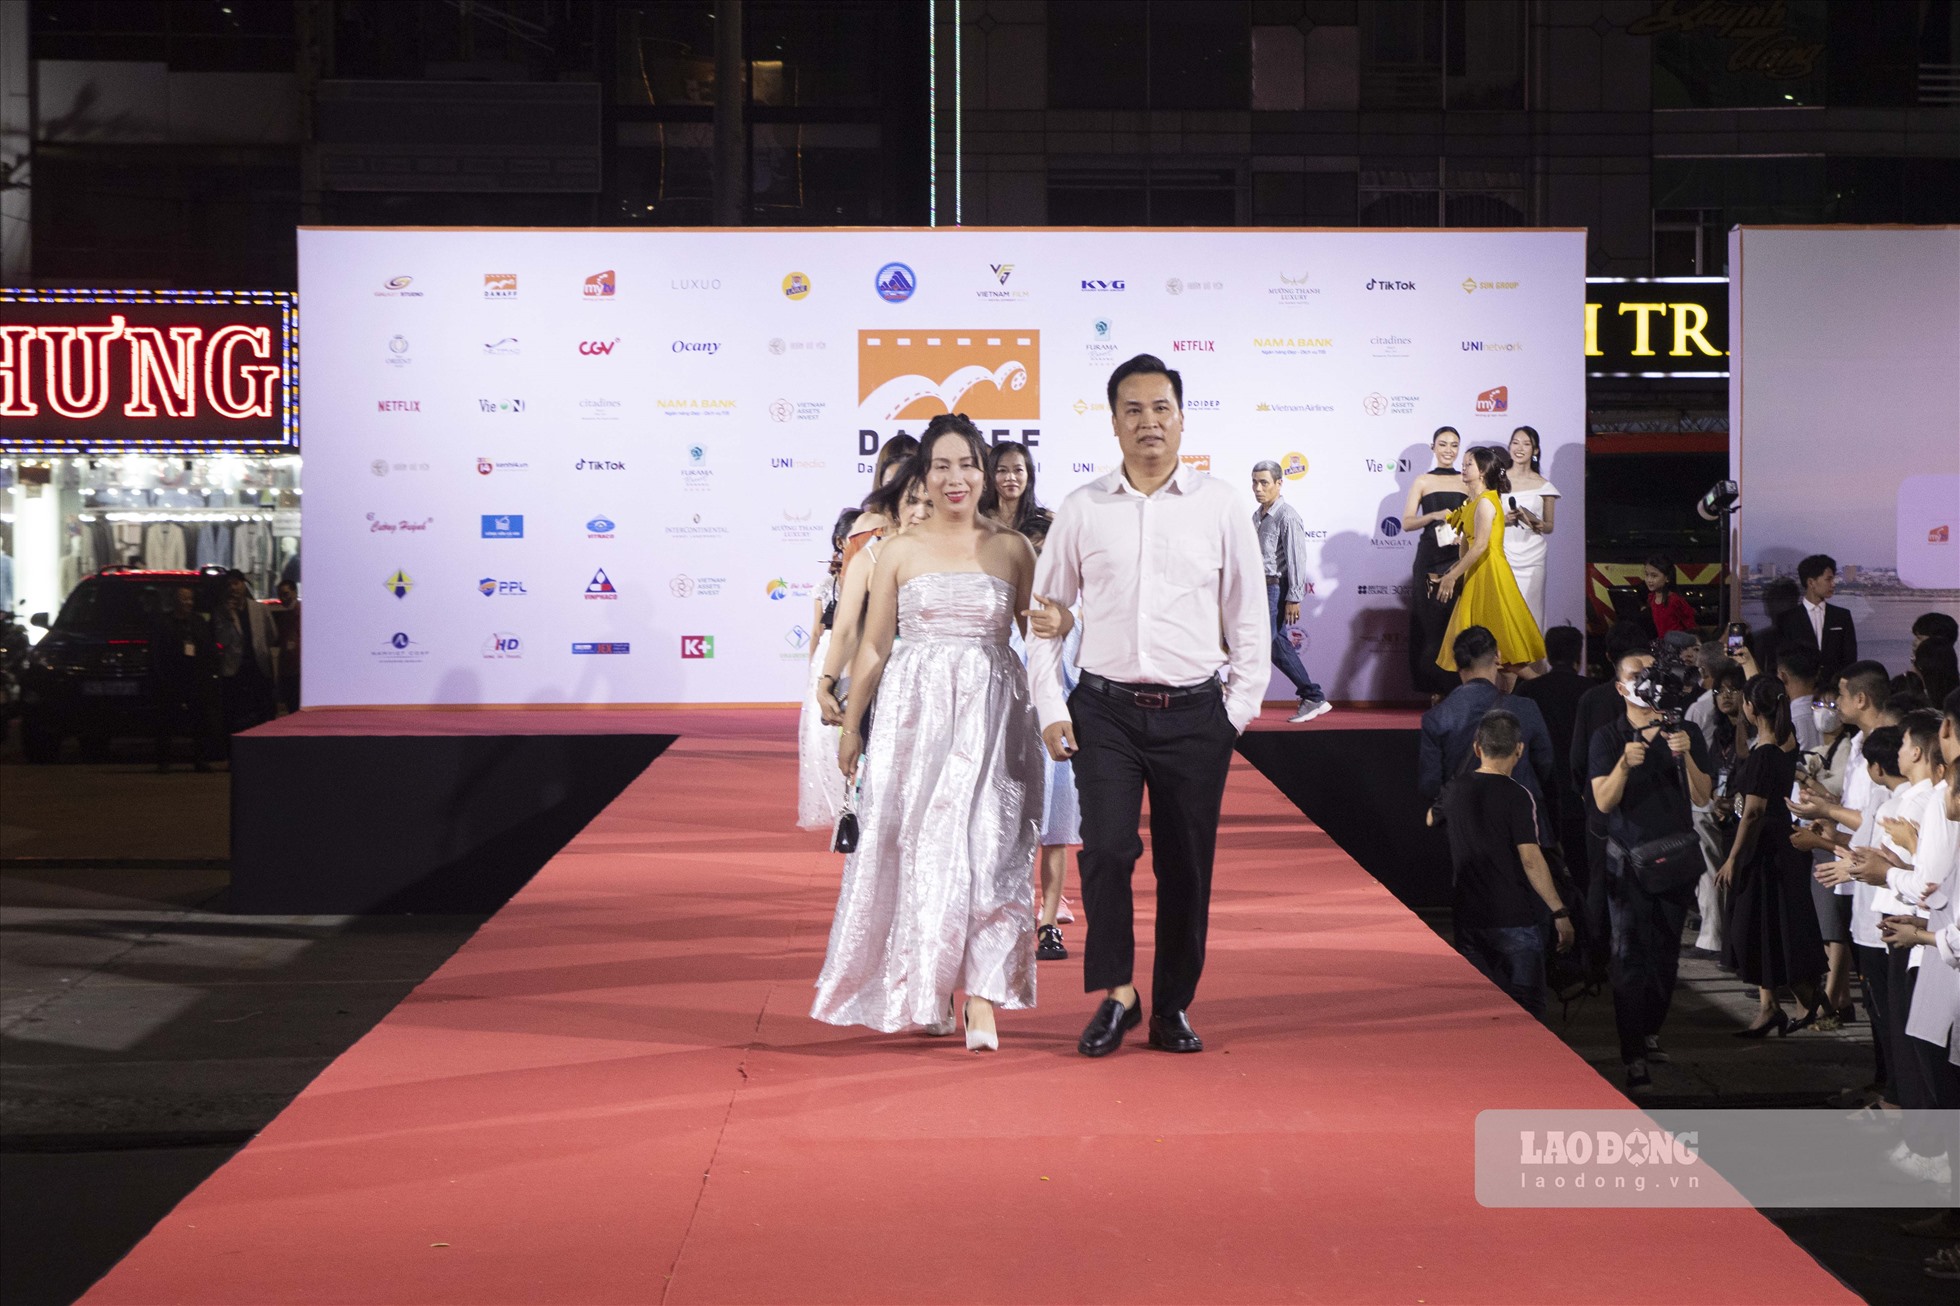 Liên hoan phim châu Á Đà Nẵng lần thứ I đã nhận được sự quan tâm của các nghệ sĩ, nhà làm phim và khán giả Việt.